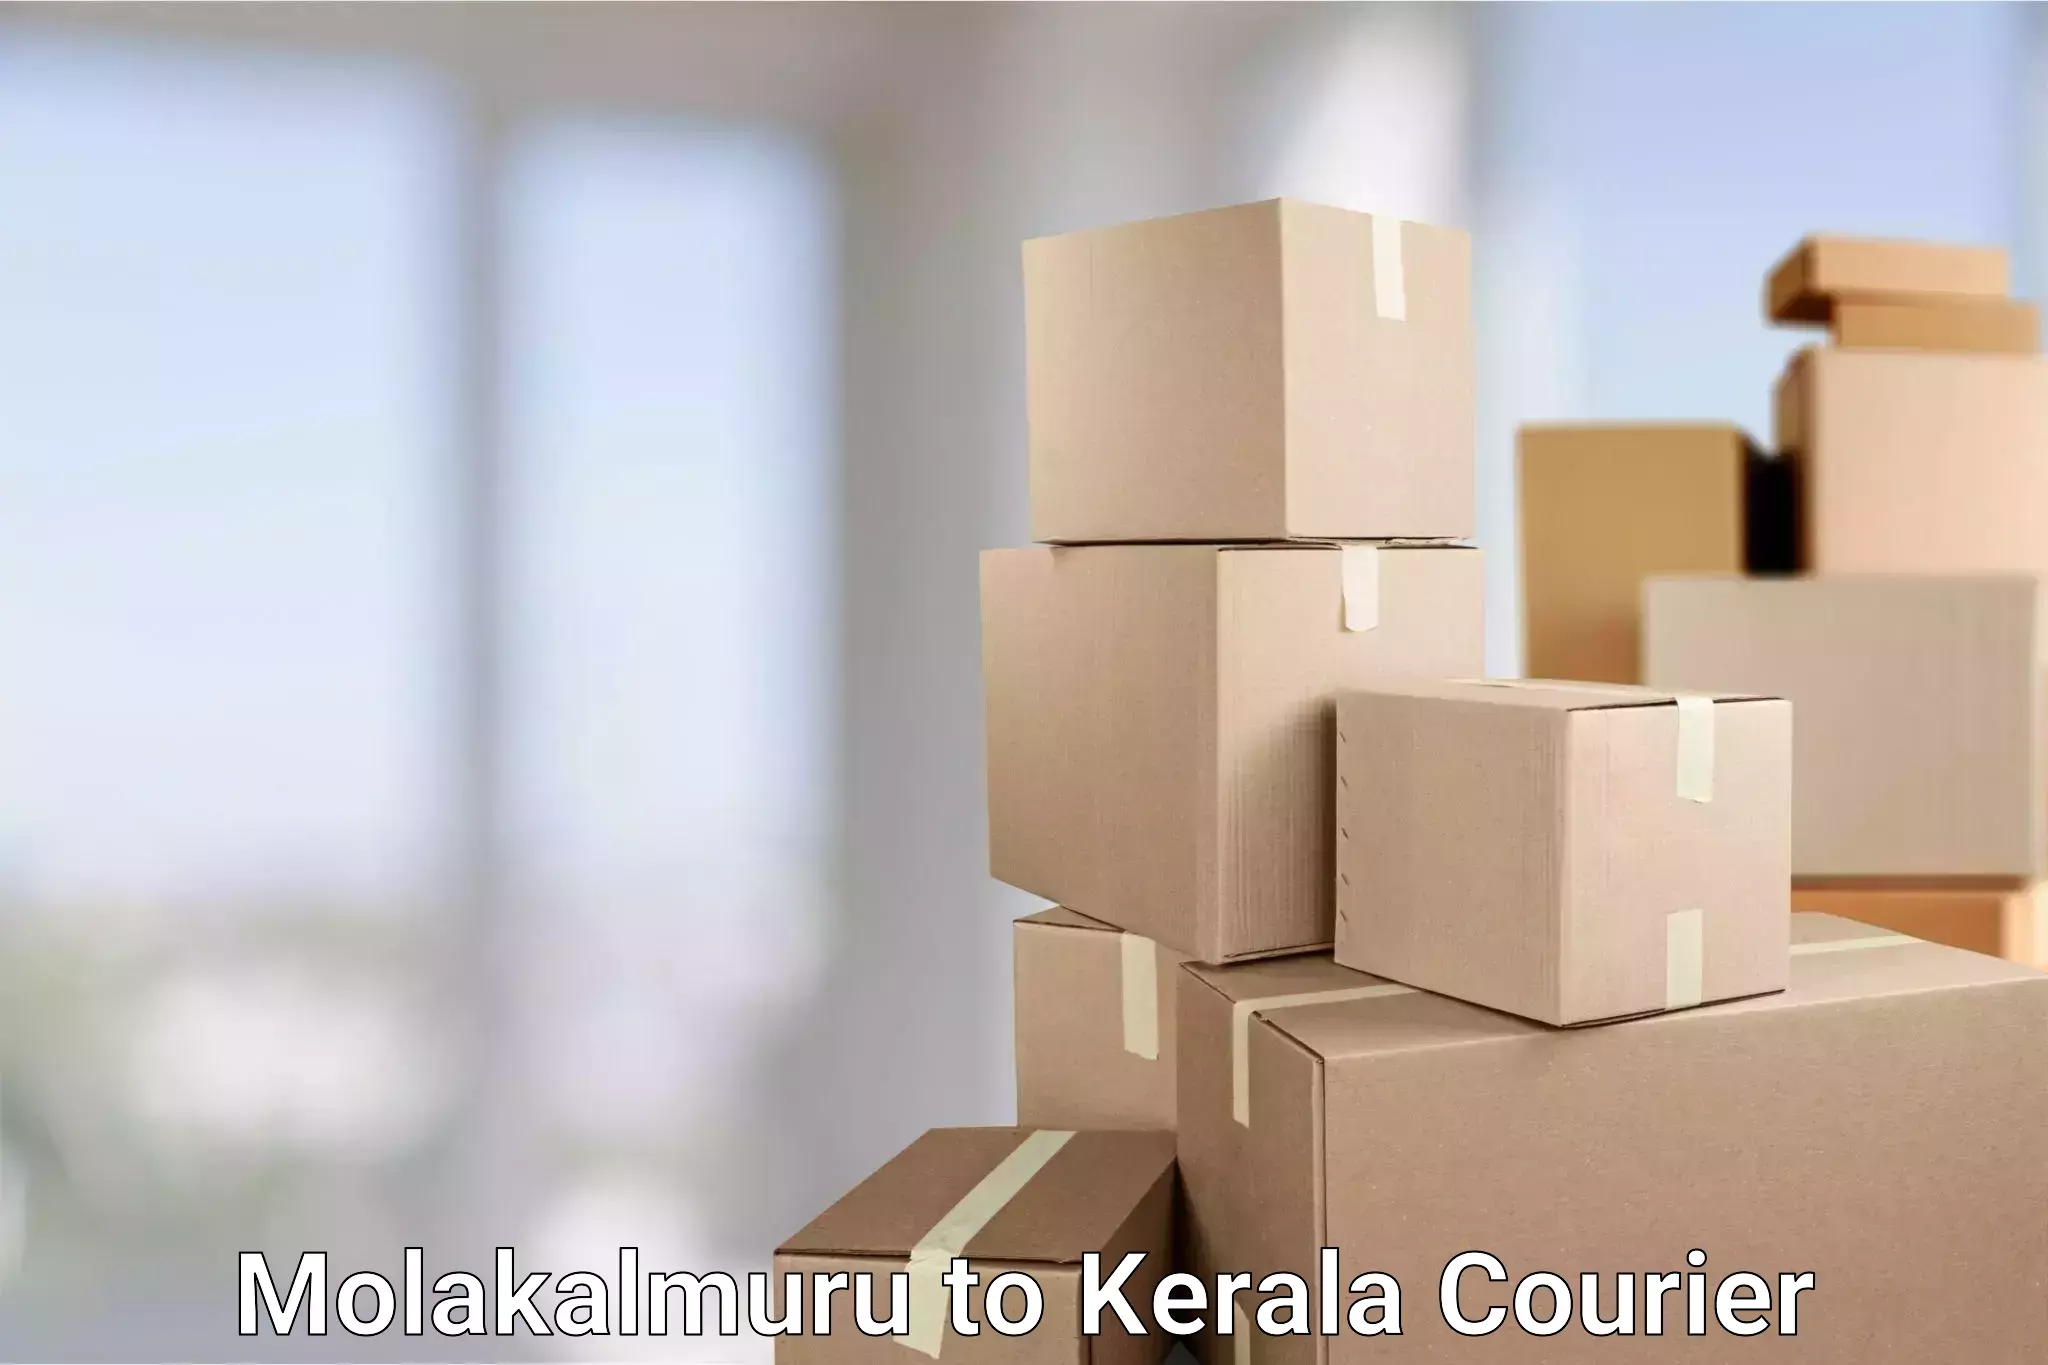 Local courier options Molakalmuru to Kerala